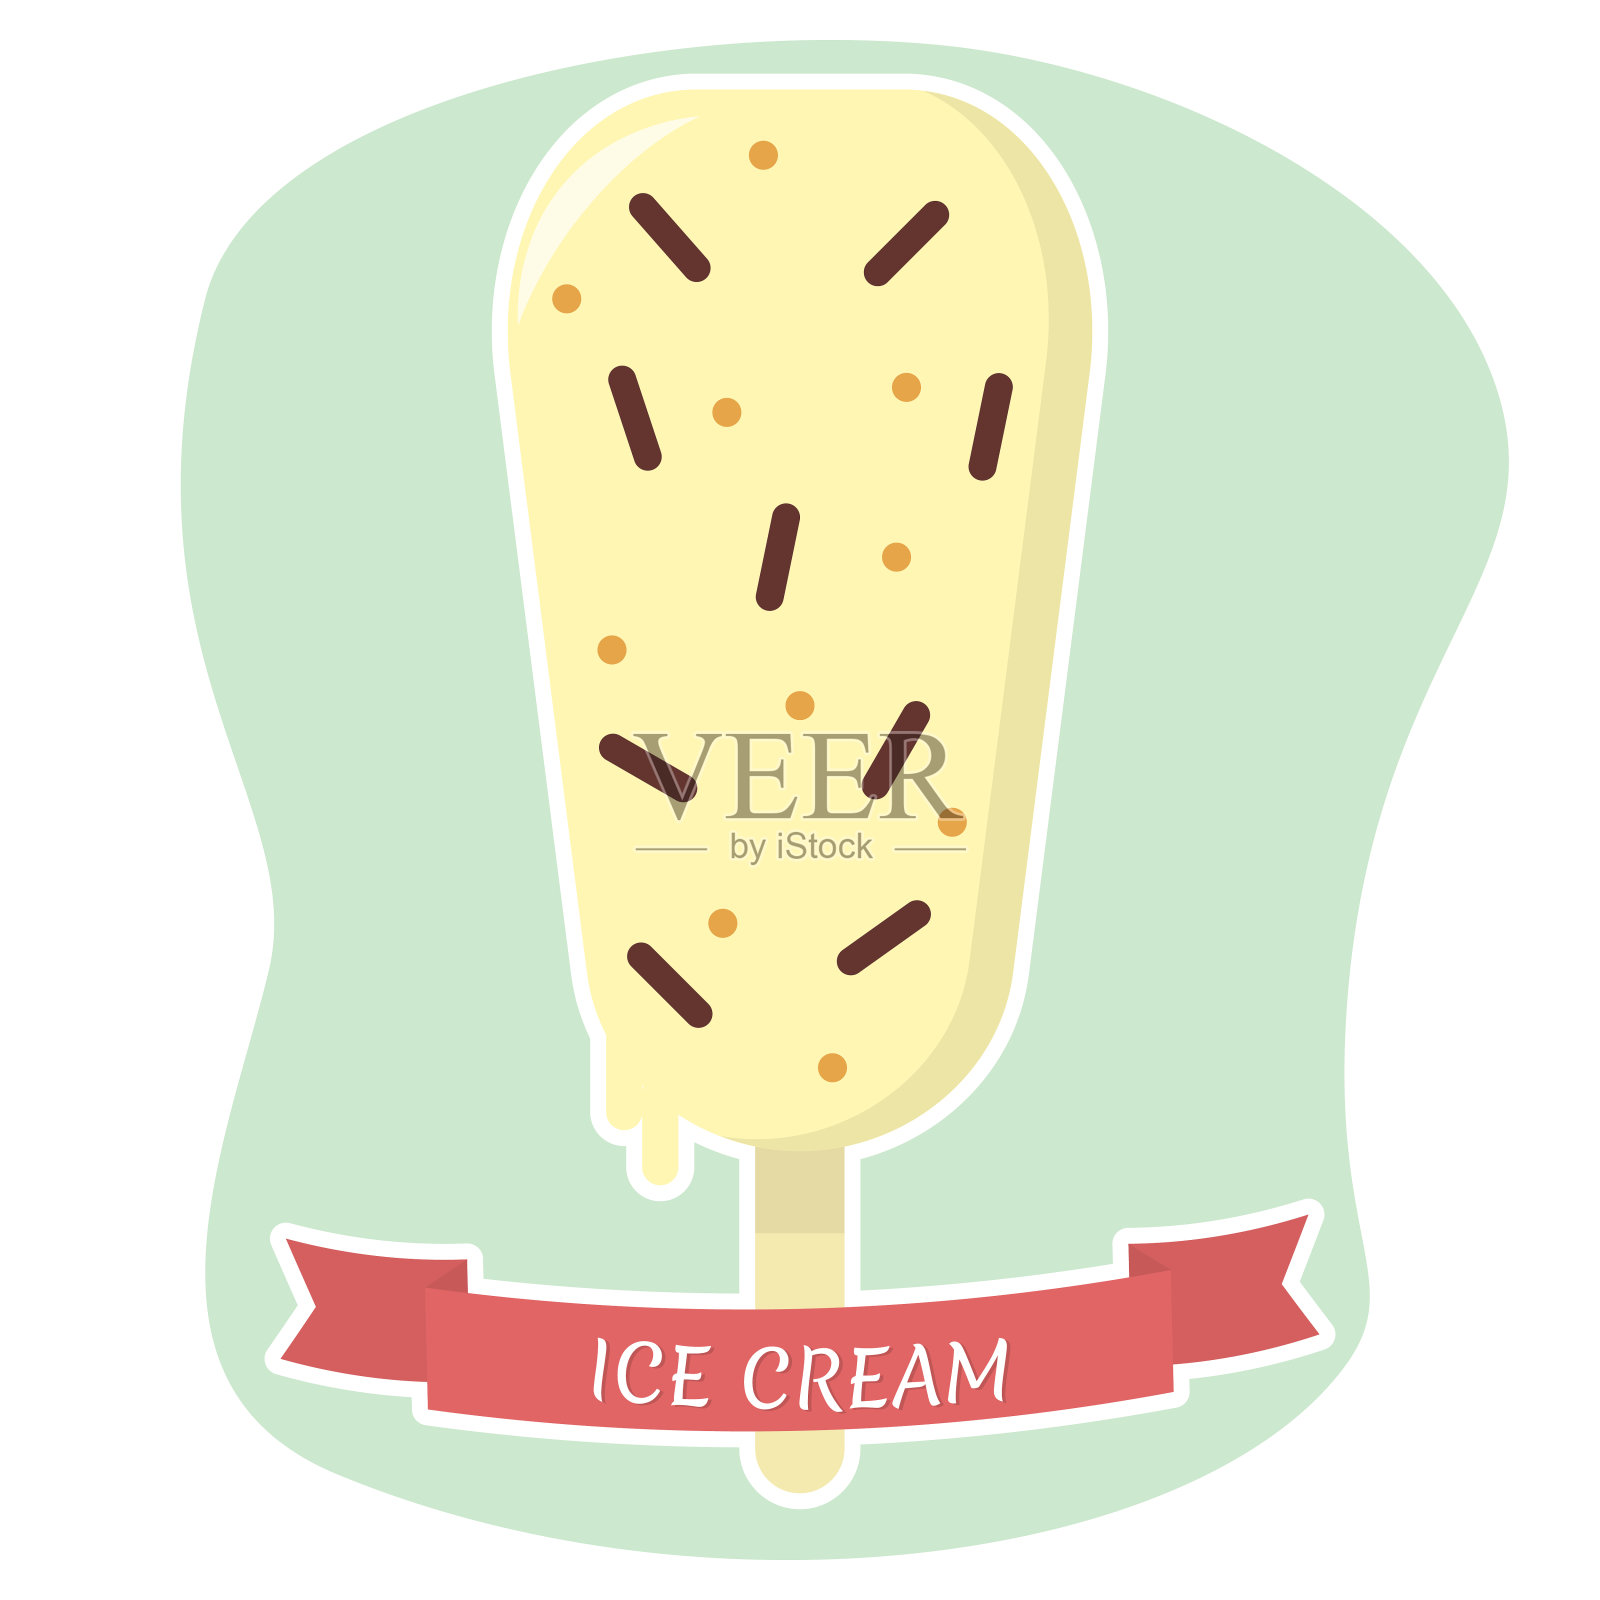 冰淇淋上的棒状扁平图标在白色描边与红色丝带的背景设计元素图片